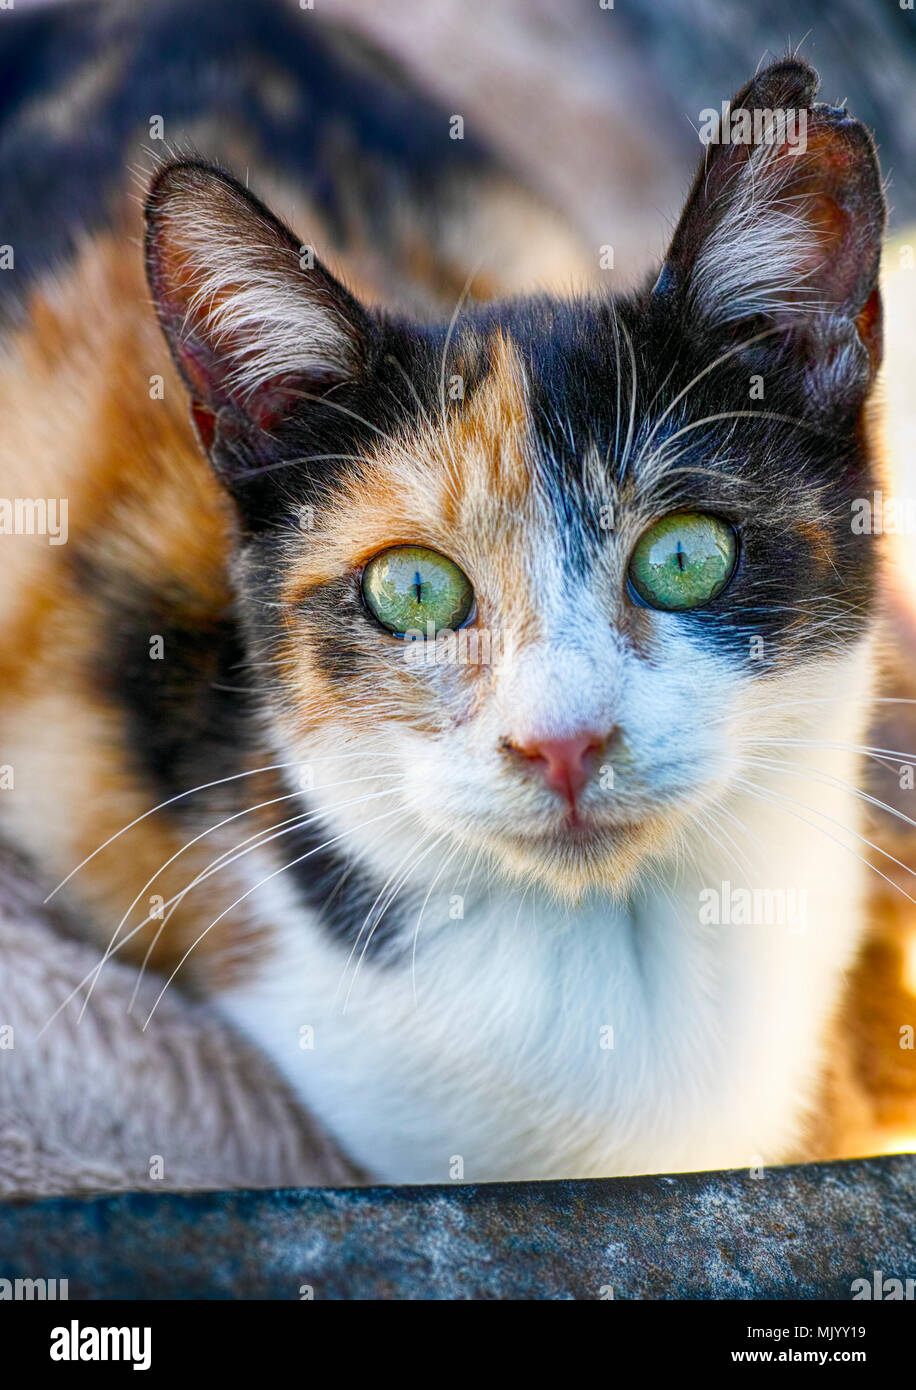 Portrait de chat calico. Close-up. Banque D'Images